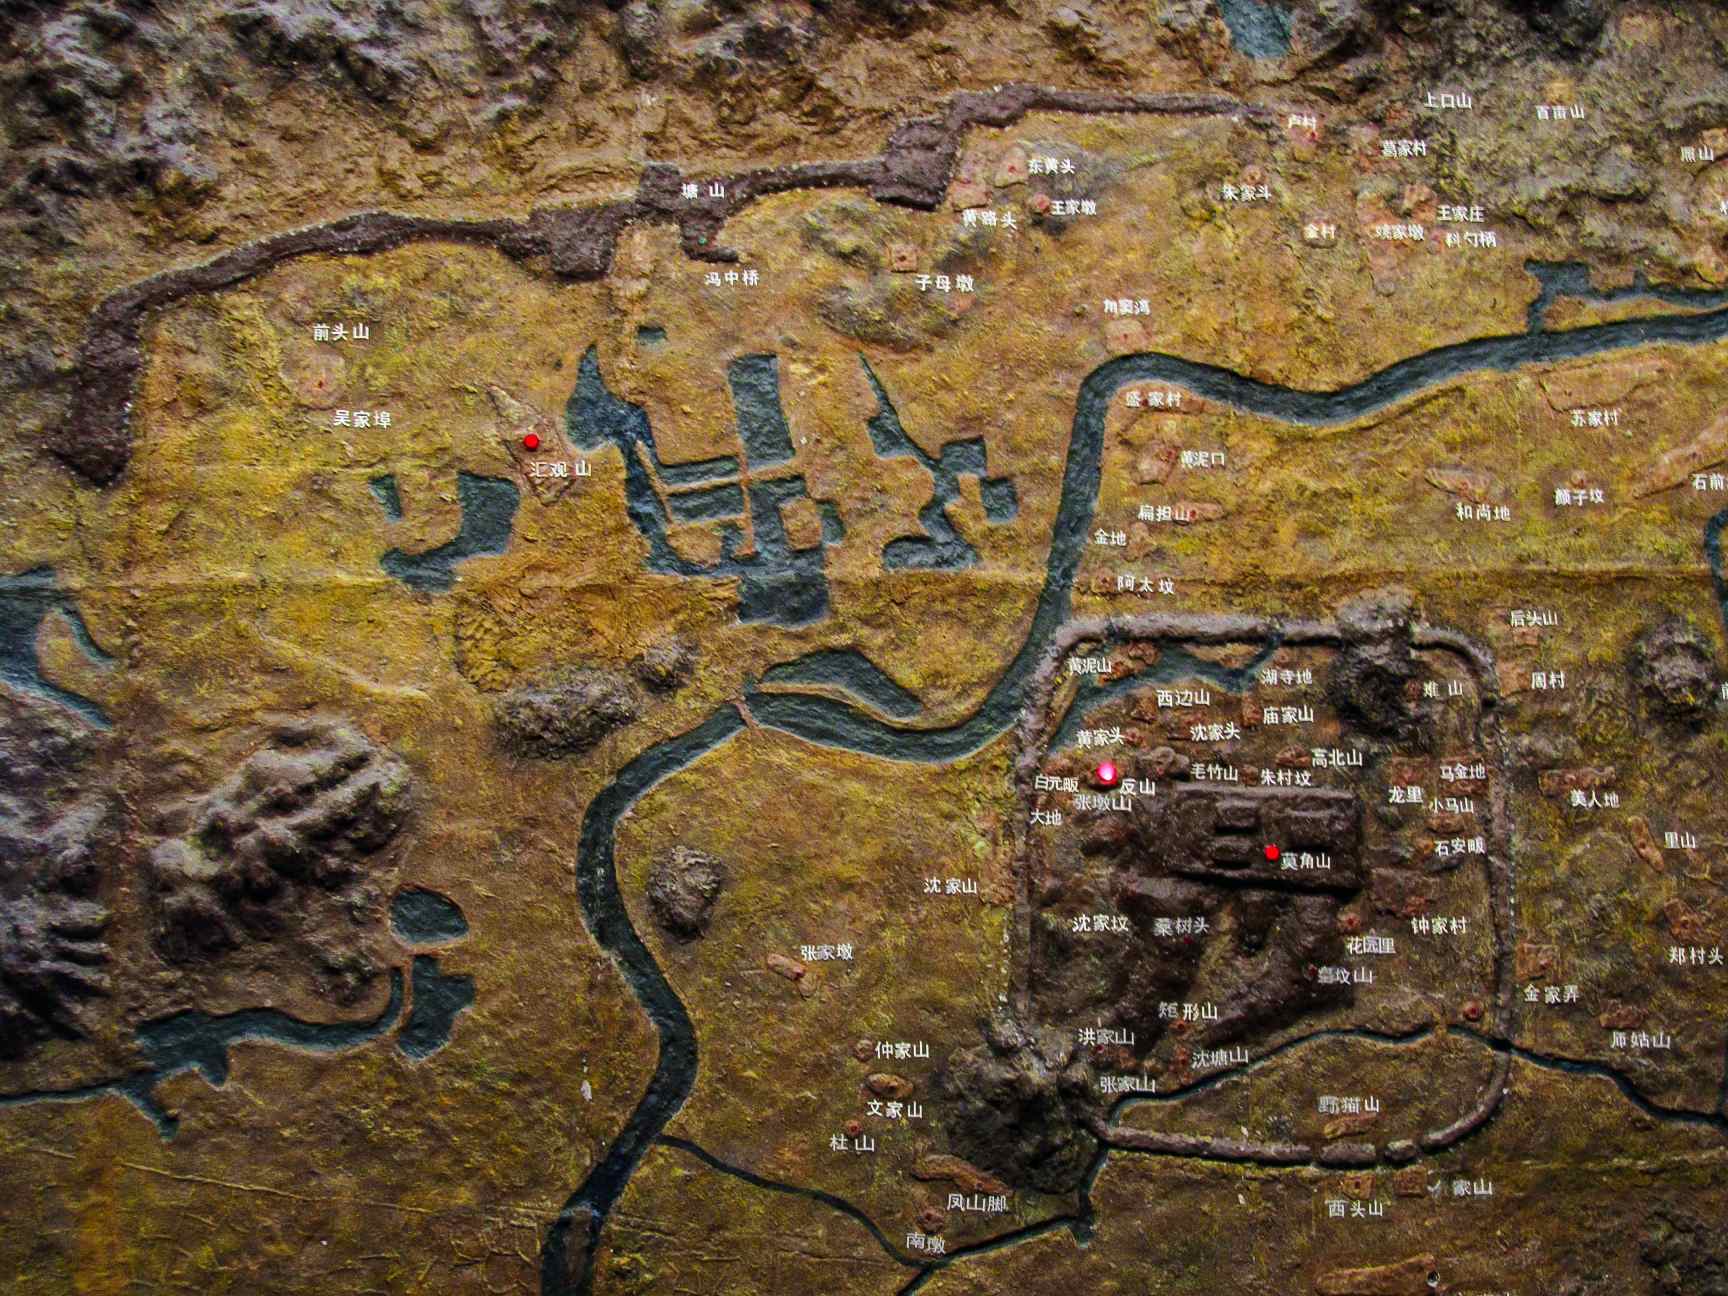 량주 박물관에 전시된 고대 도시 량주 모형.